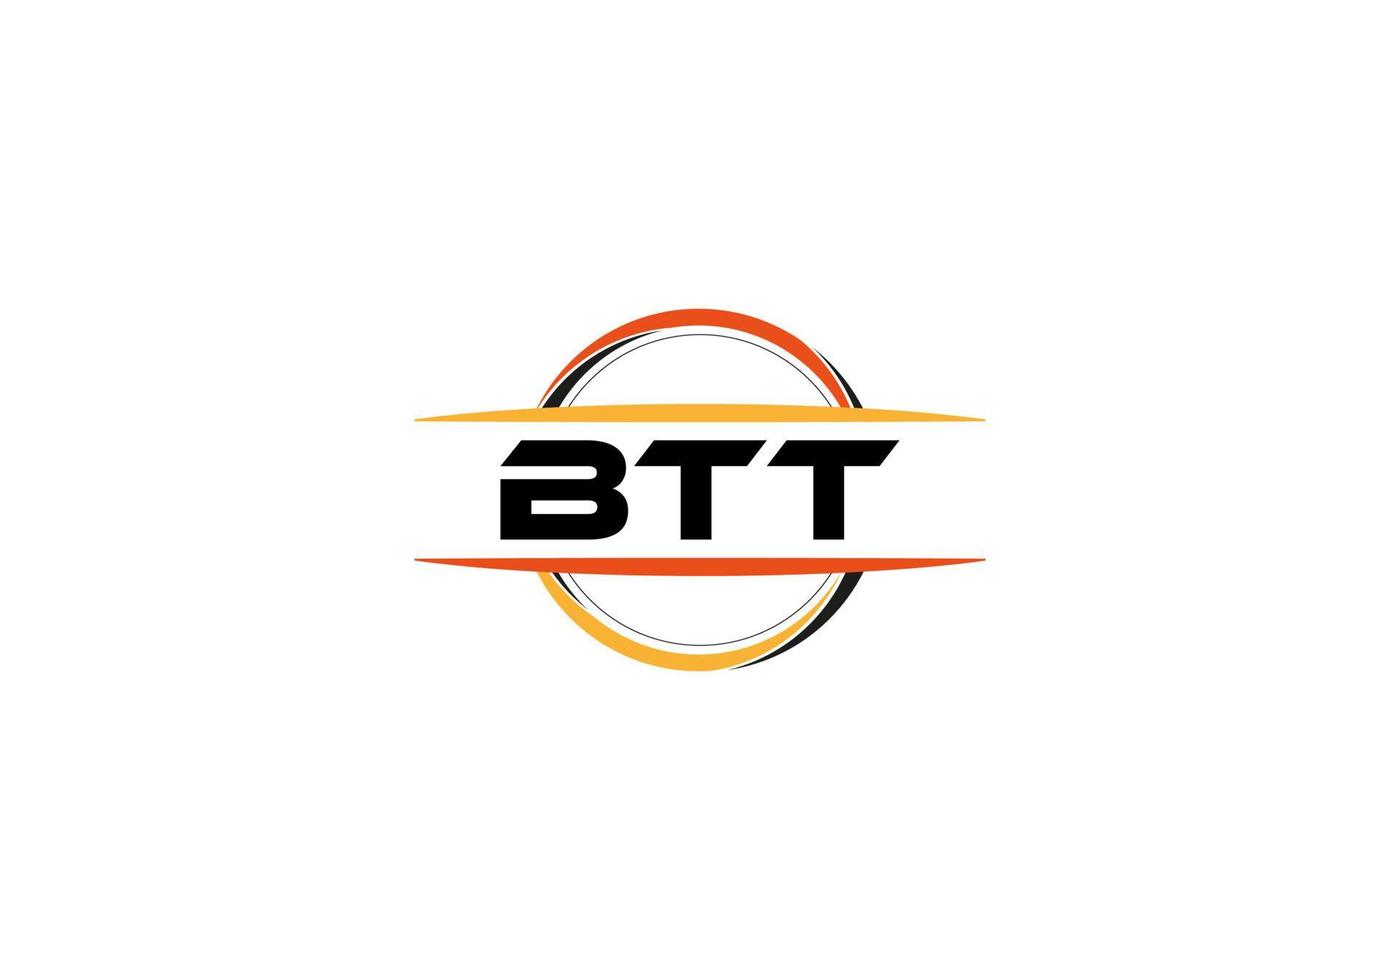 btt letra realeza elipse forma logo. btt cepillo Arte logo. btt logo para un compañía, negocio, y comercial usar. vector